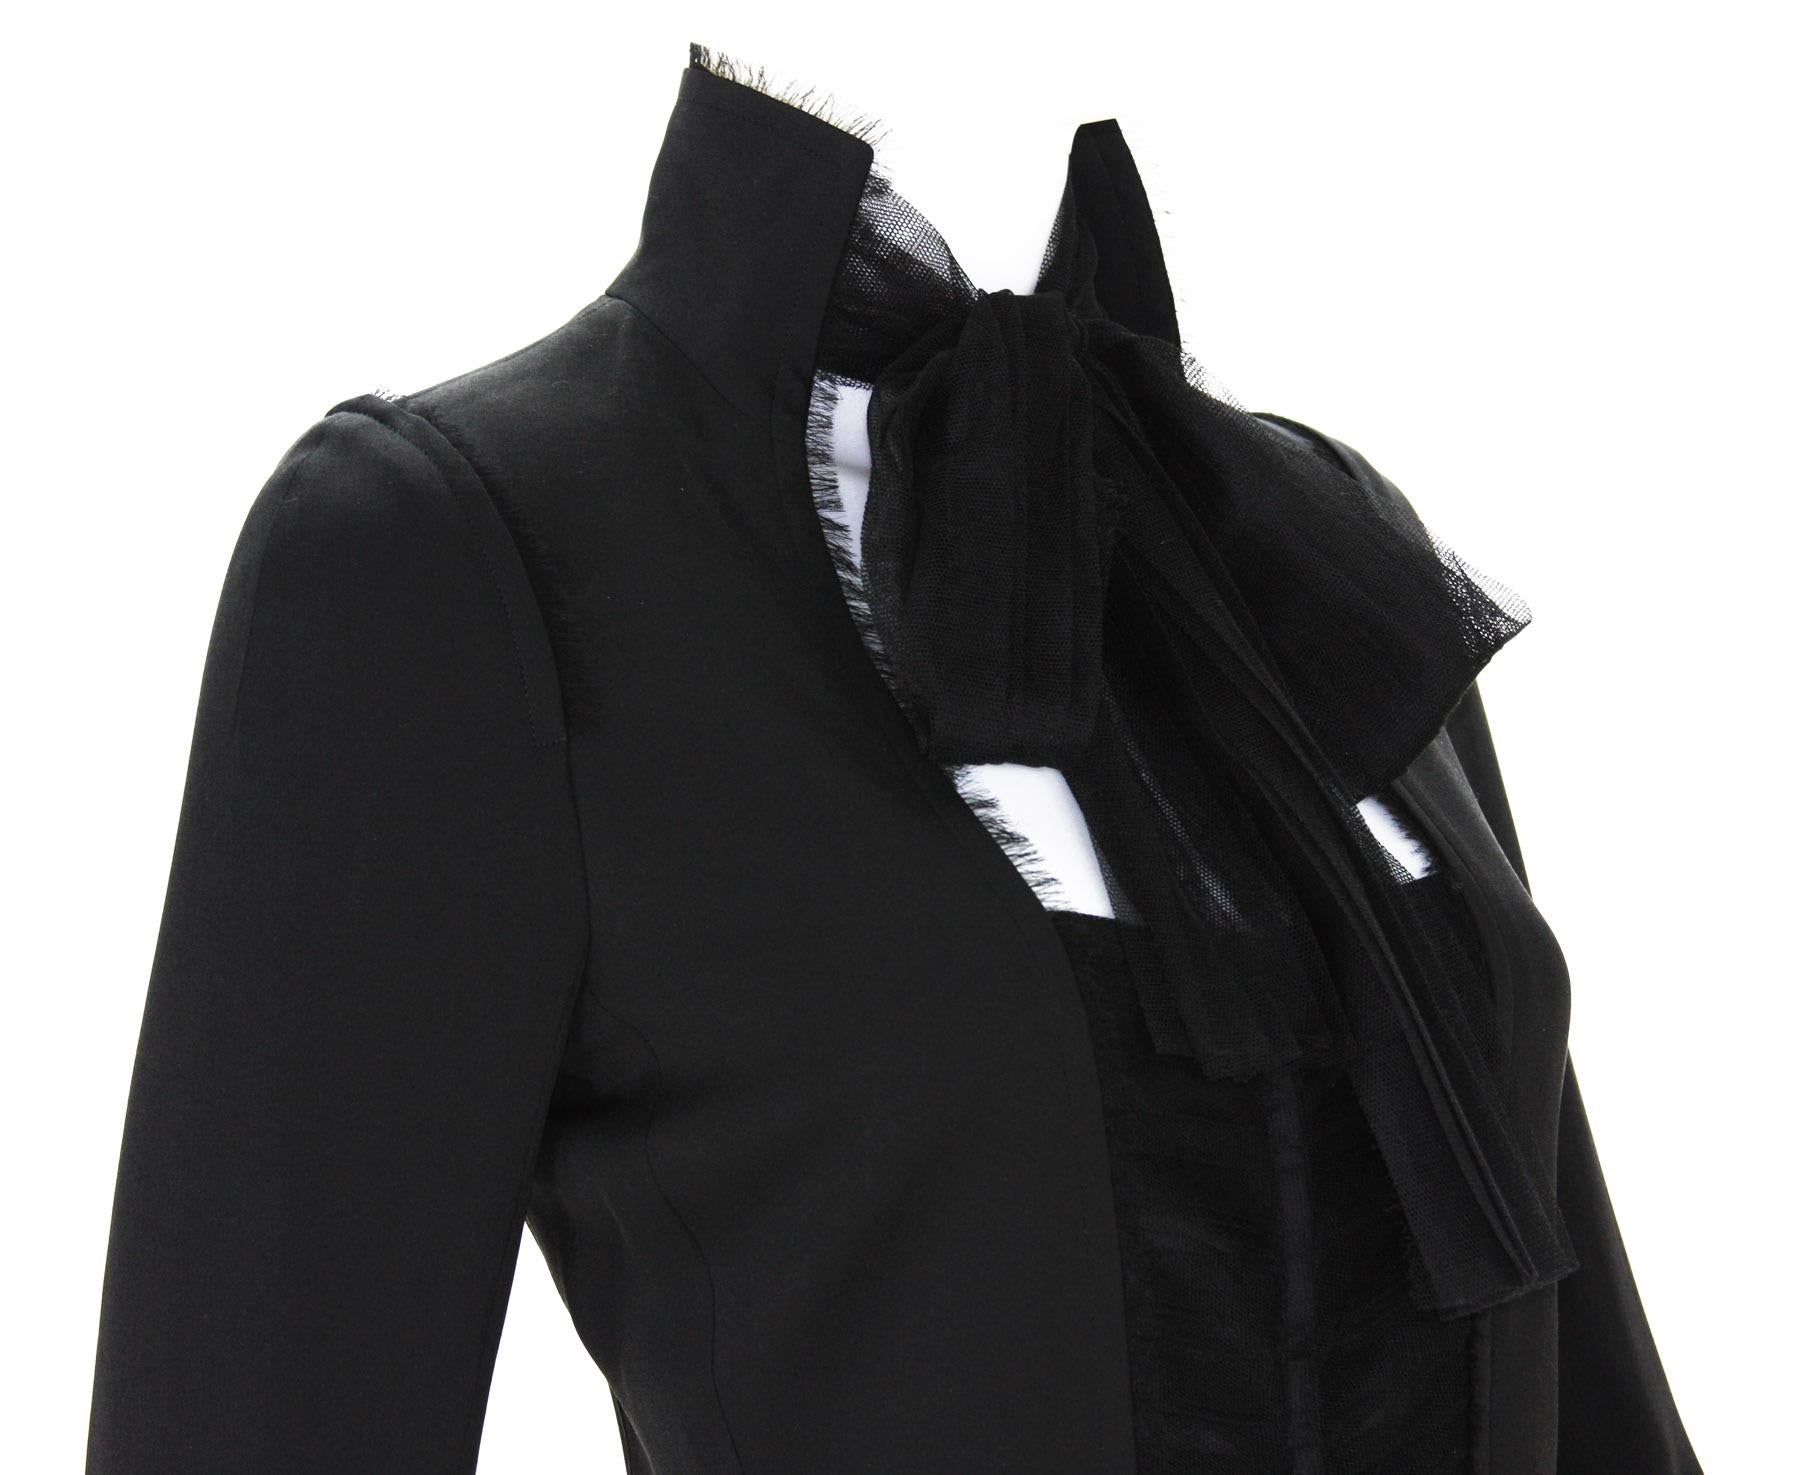 Tom Ford for Yves Saint Laurent F/W 2002 Black Silk Tulle Jacket Blazer 36, 38  6